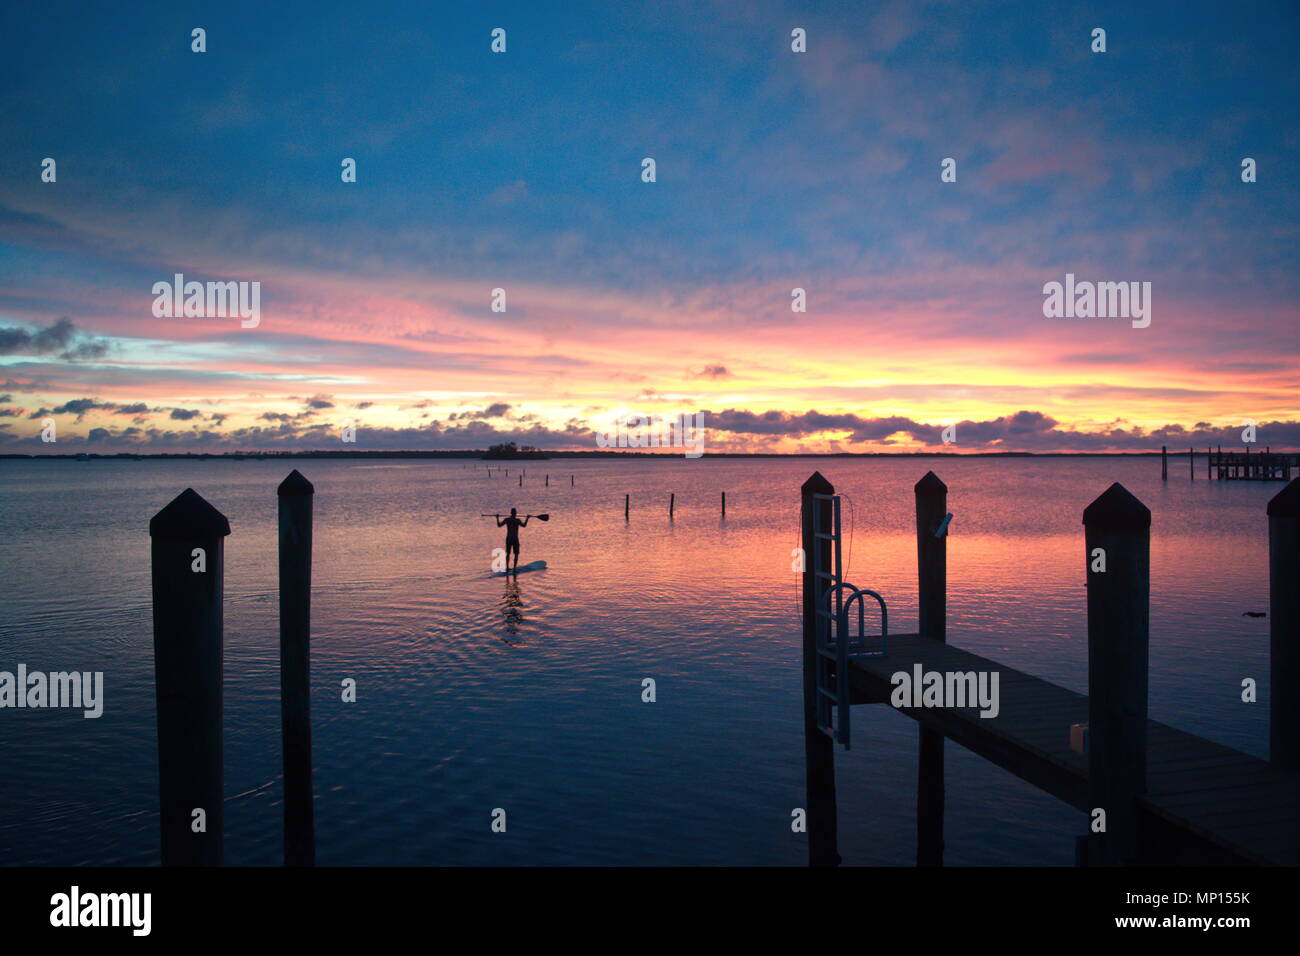 Brillante tramonto colorato con le nubi sulla costa del Golfo della Florida. Uomo in piedi sulla scheda paddle, stagliano lungo i moli. Foto Stock